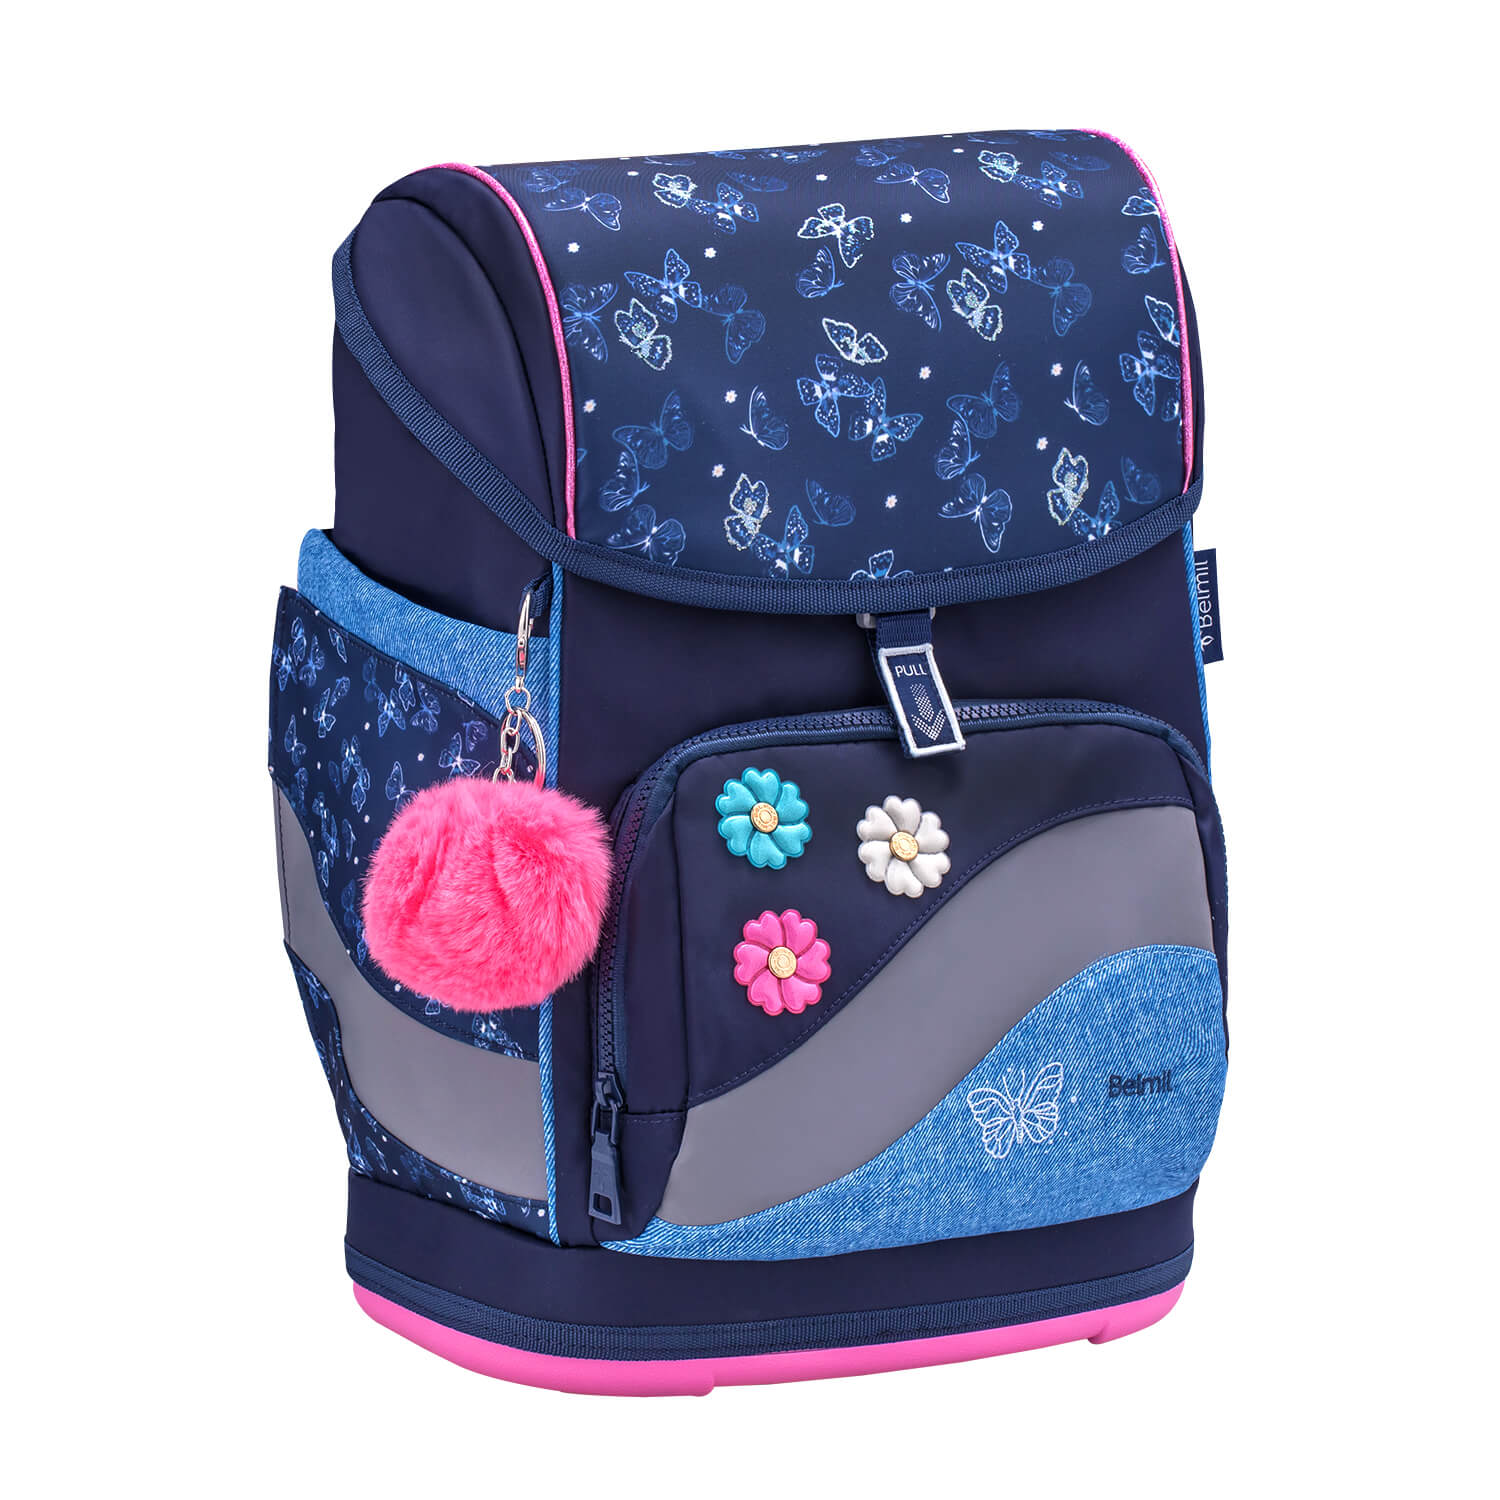 Smarty Plus Sapphire Schoolbag set 5pcs.